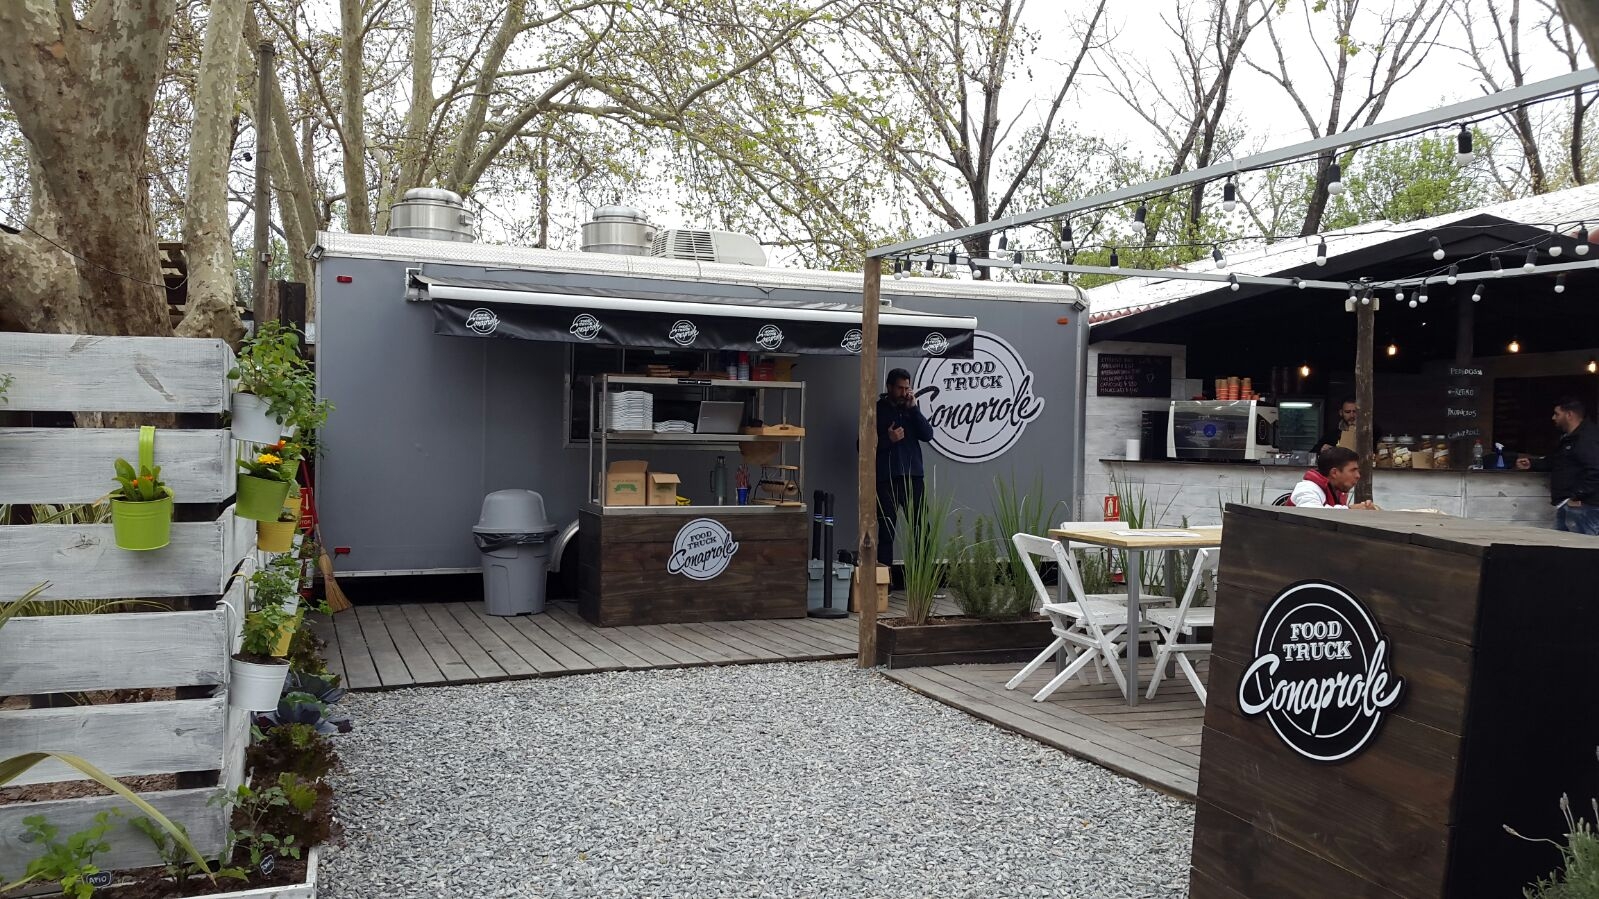  Food Truck: Novedosa propuesta en la Expo Prado 2015